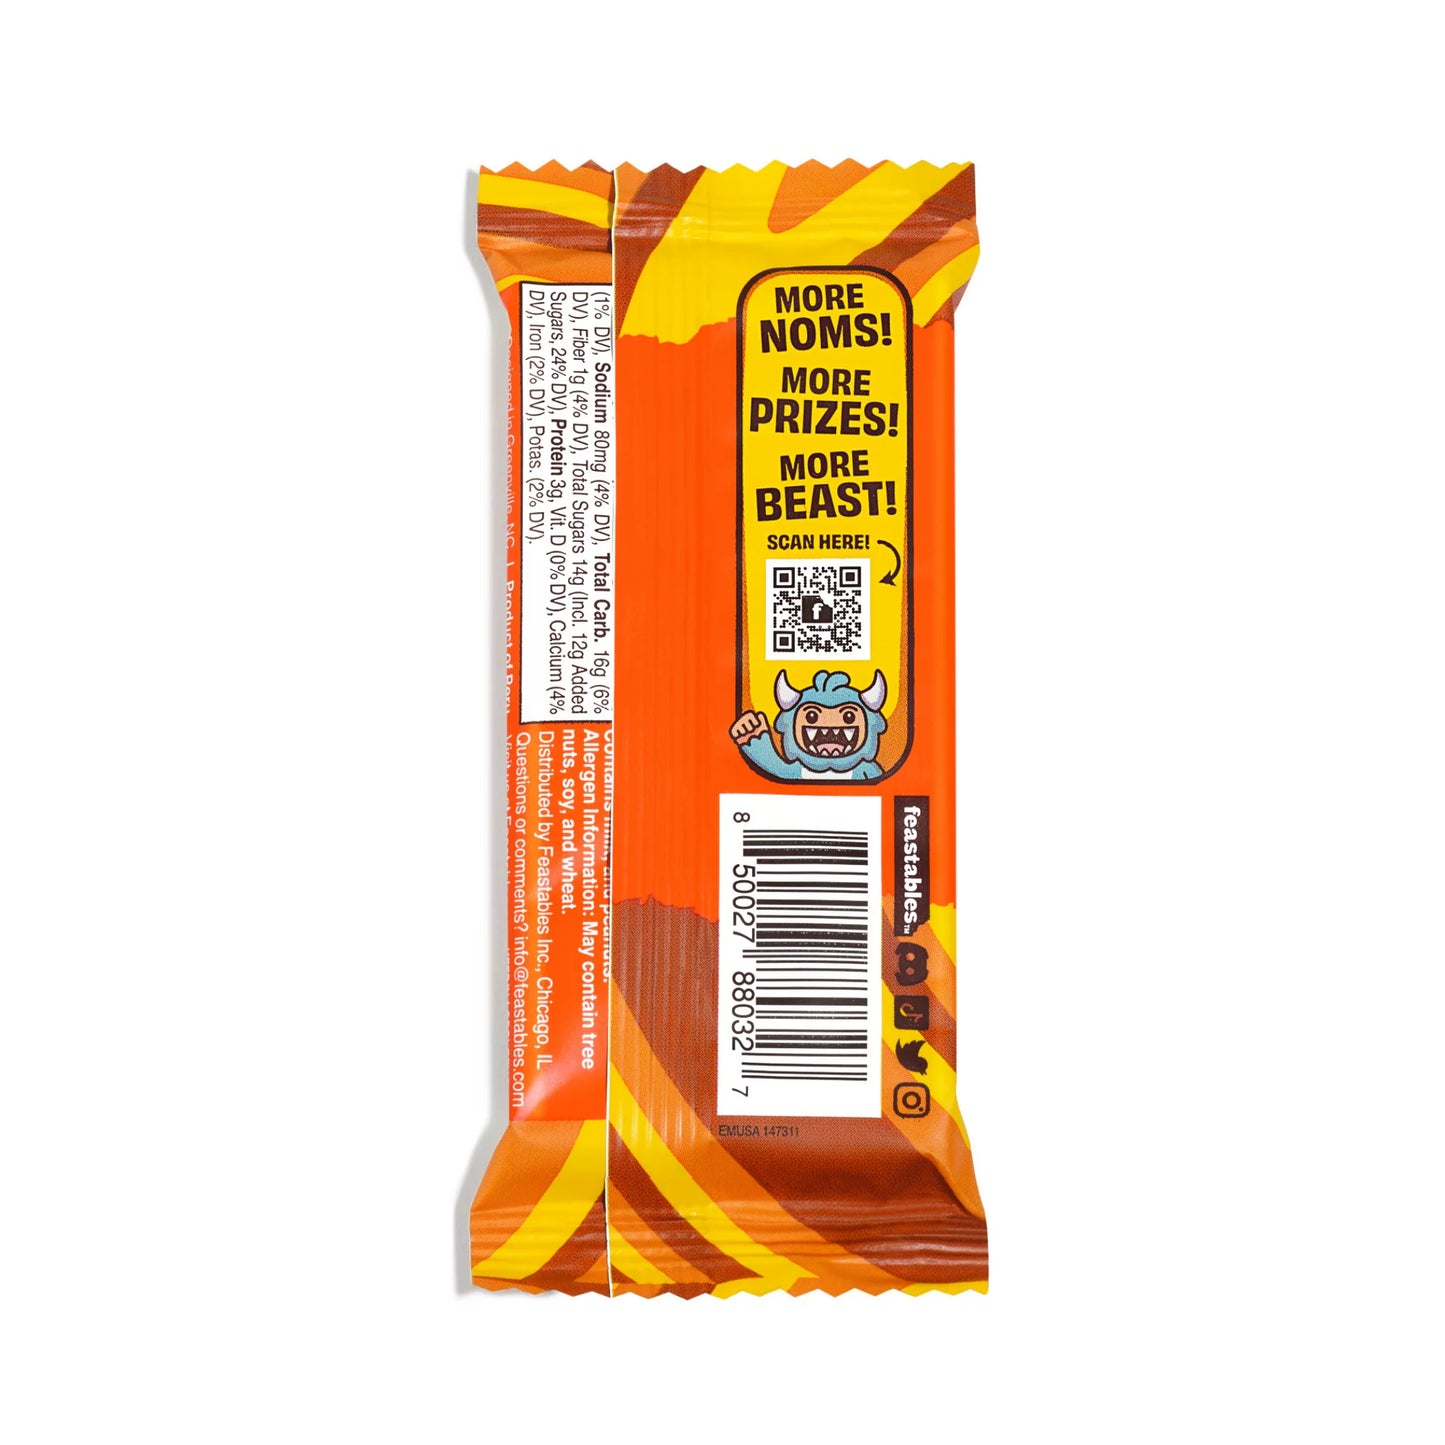 Feastables Mr Beast Deez Nutz Peanut Butter Milk Chocolate Bar, 35g